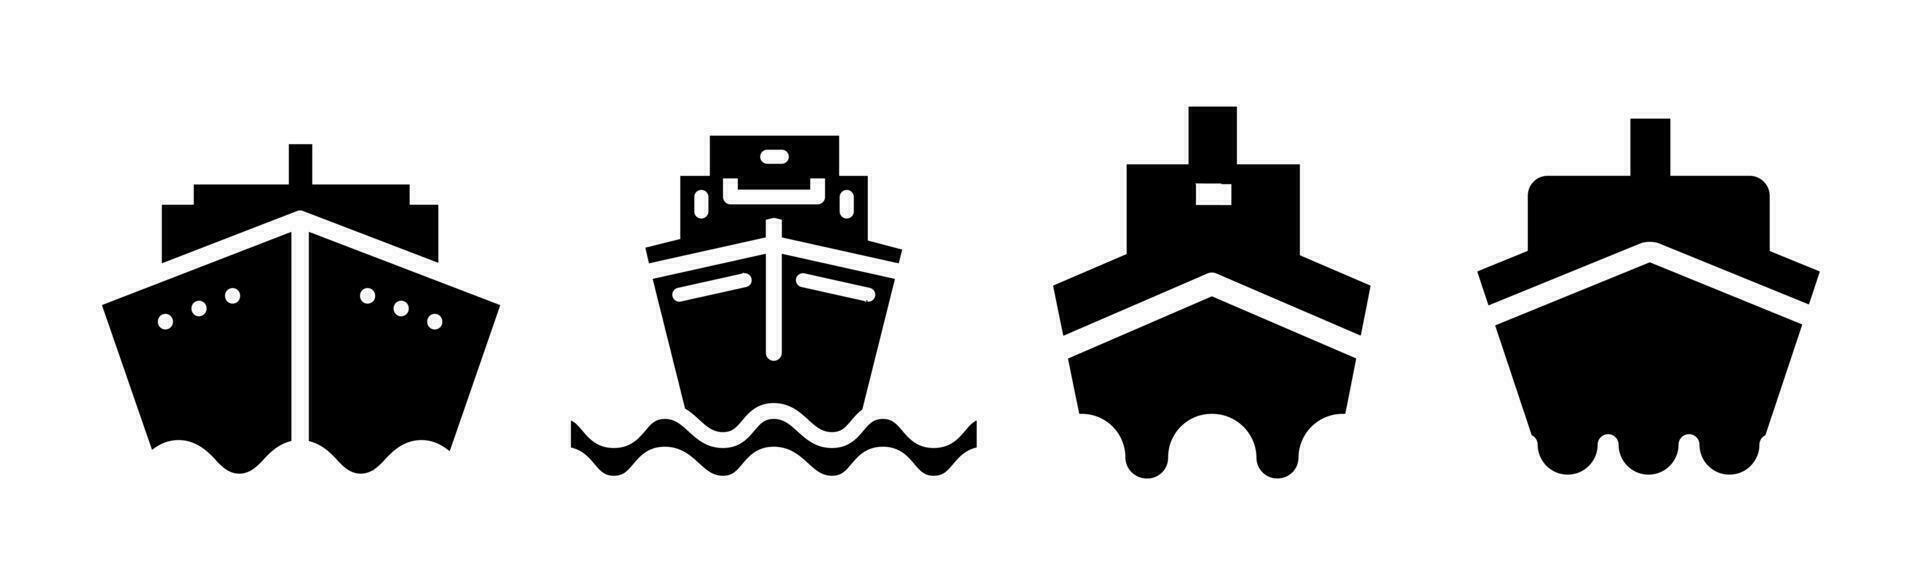 Ship icon collection. An illustration of a black ship icon. Stock vector. vector